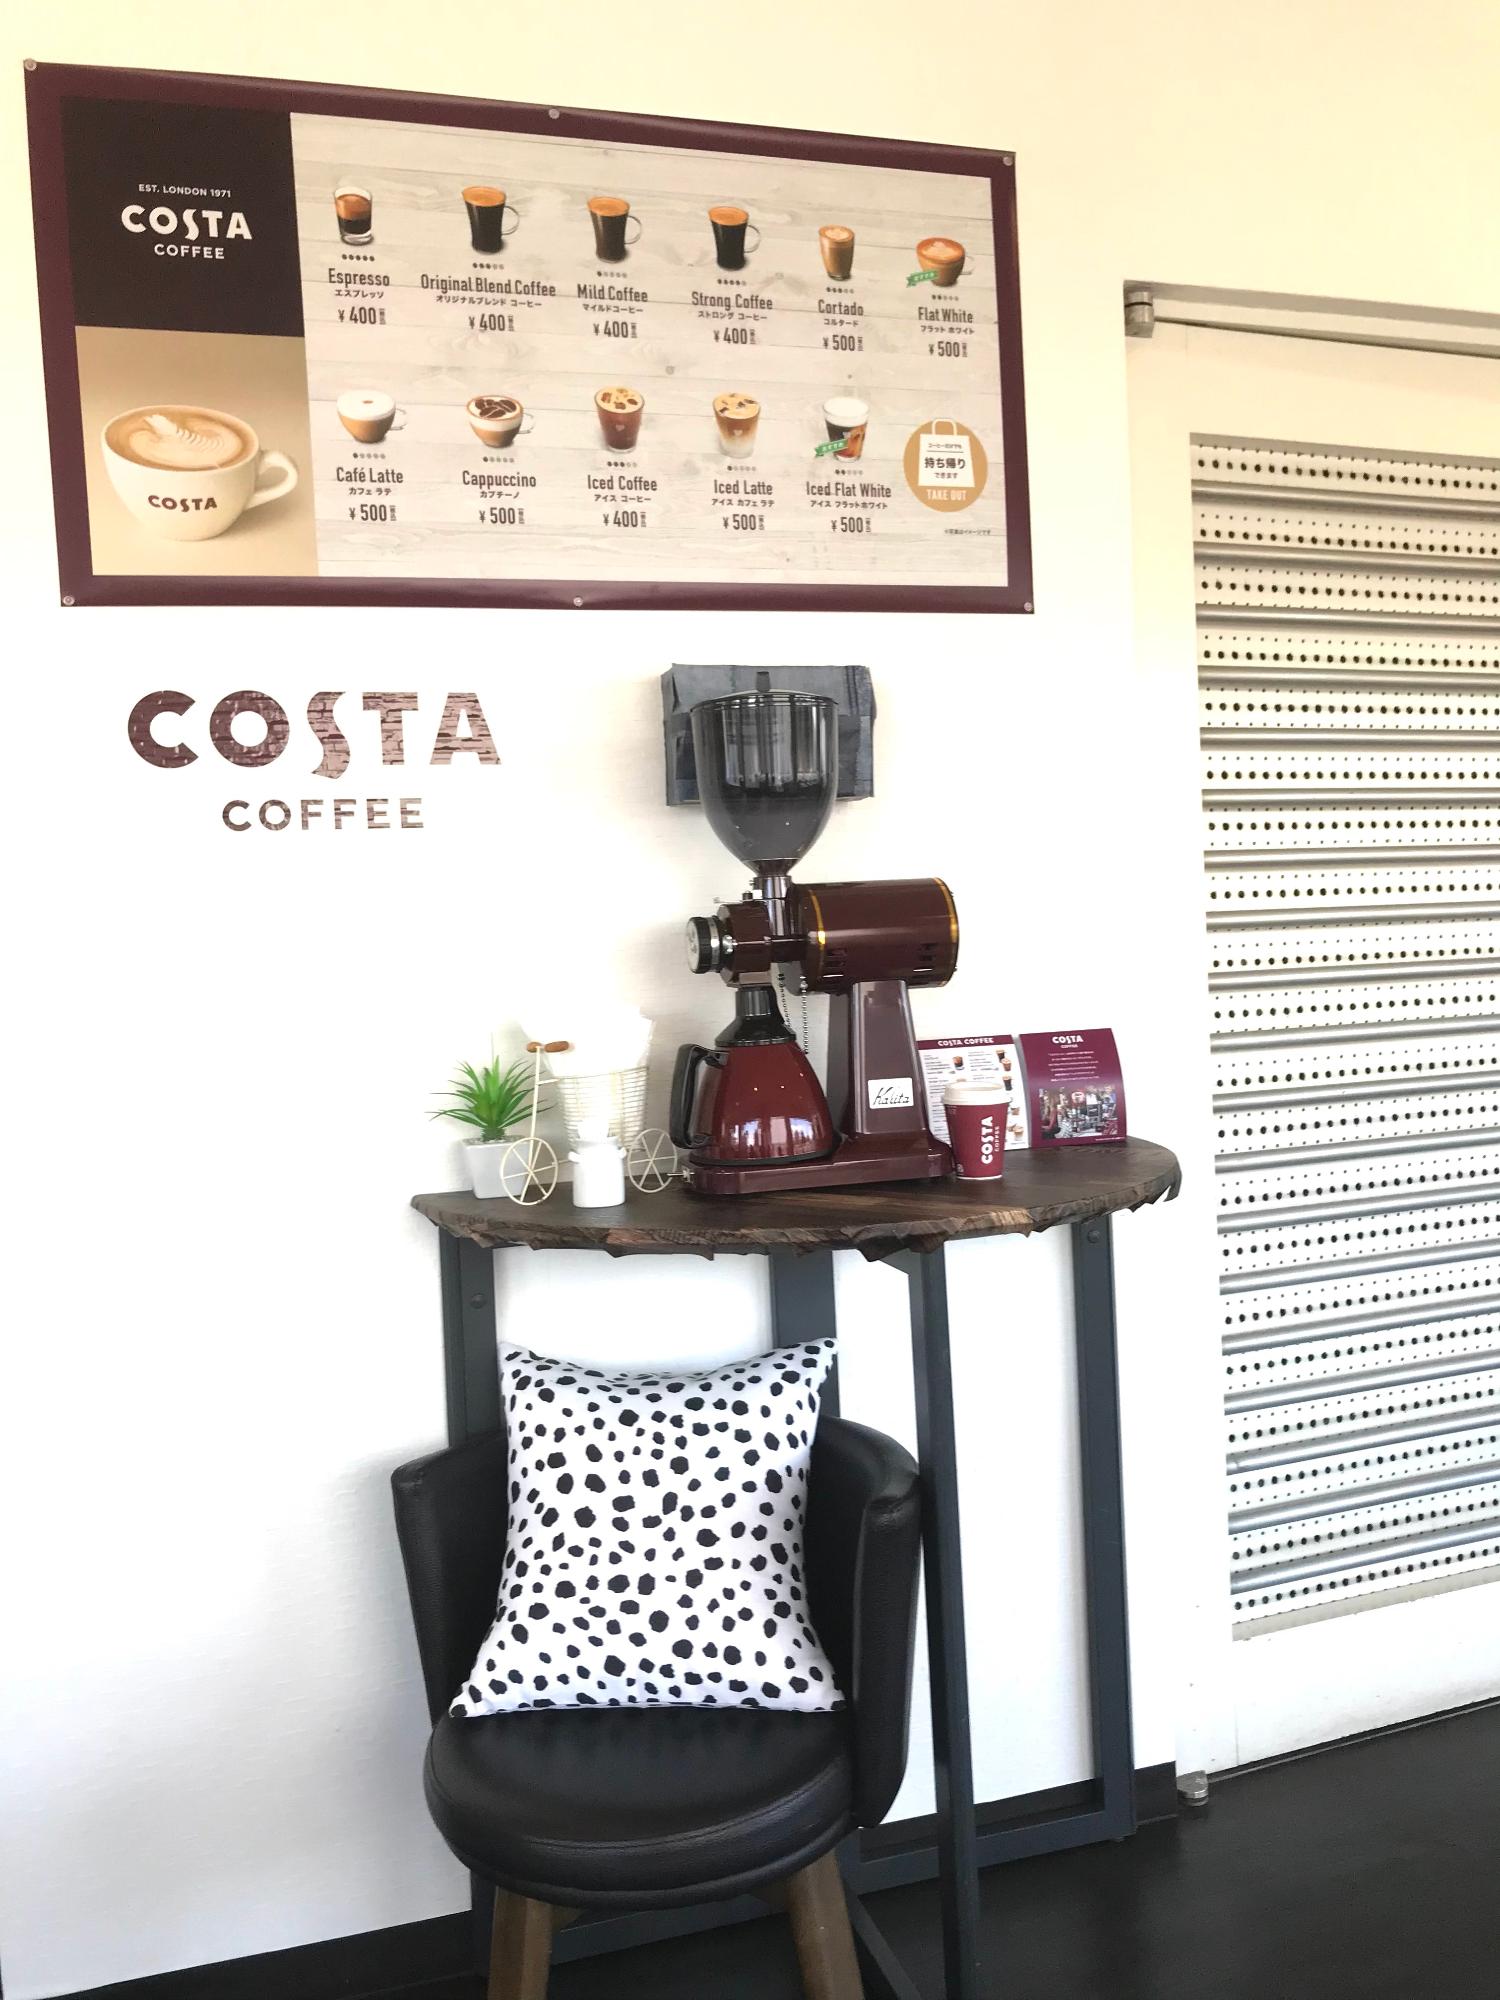 COSTAコーヒーのメニュー、コーヒーミル、丸椅子、クッションがディスプレイされた店内